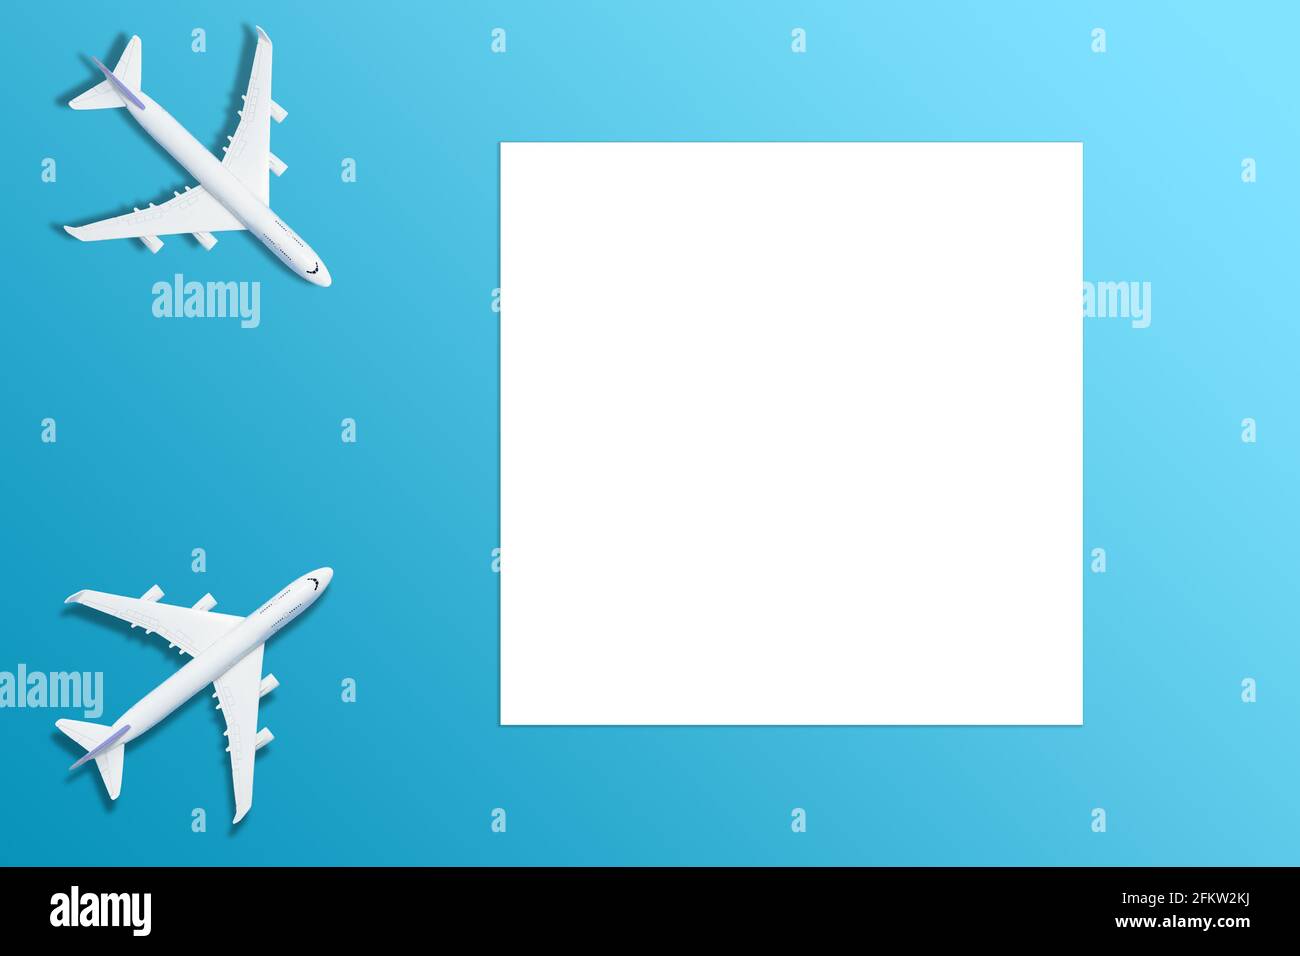 Đây là một khái niệm hình nền du lịch với mục tiêu với máy bay trên nền trắng trống. Hình ảnh này sẽ cho bạn cảm giác như đang bắt đầu một chuyến phiêu lưu mới đầy thú vị. Với sự đơn giản trong hình vẽ, bức ảnh làm cho các bạn dễ dàng tập trung vào kế hoạch hành trình của mình.